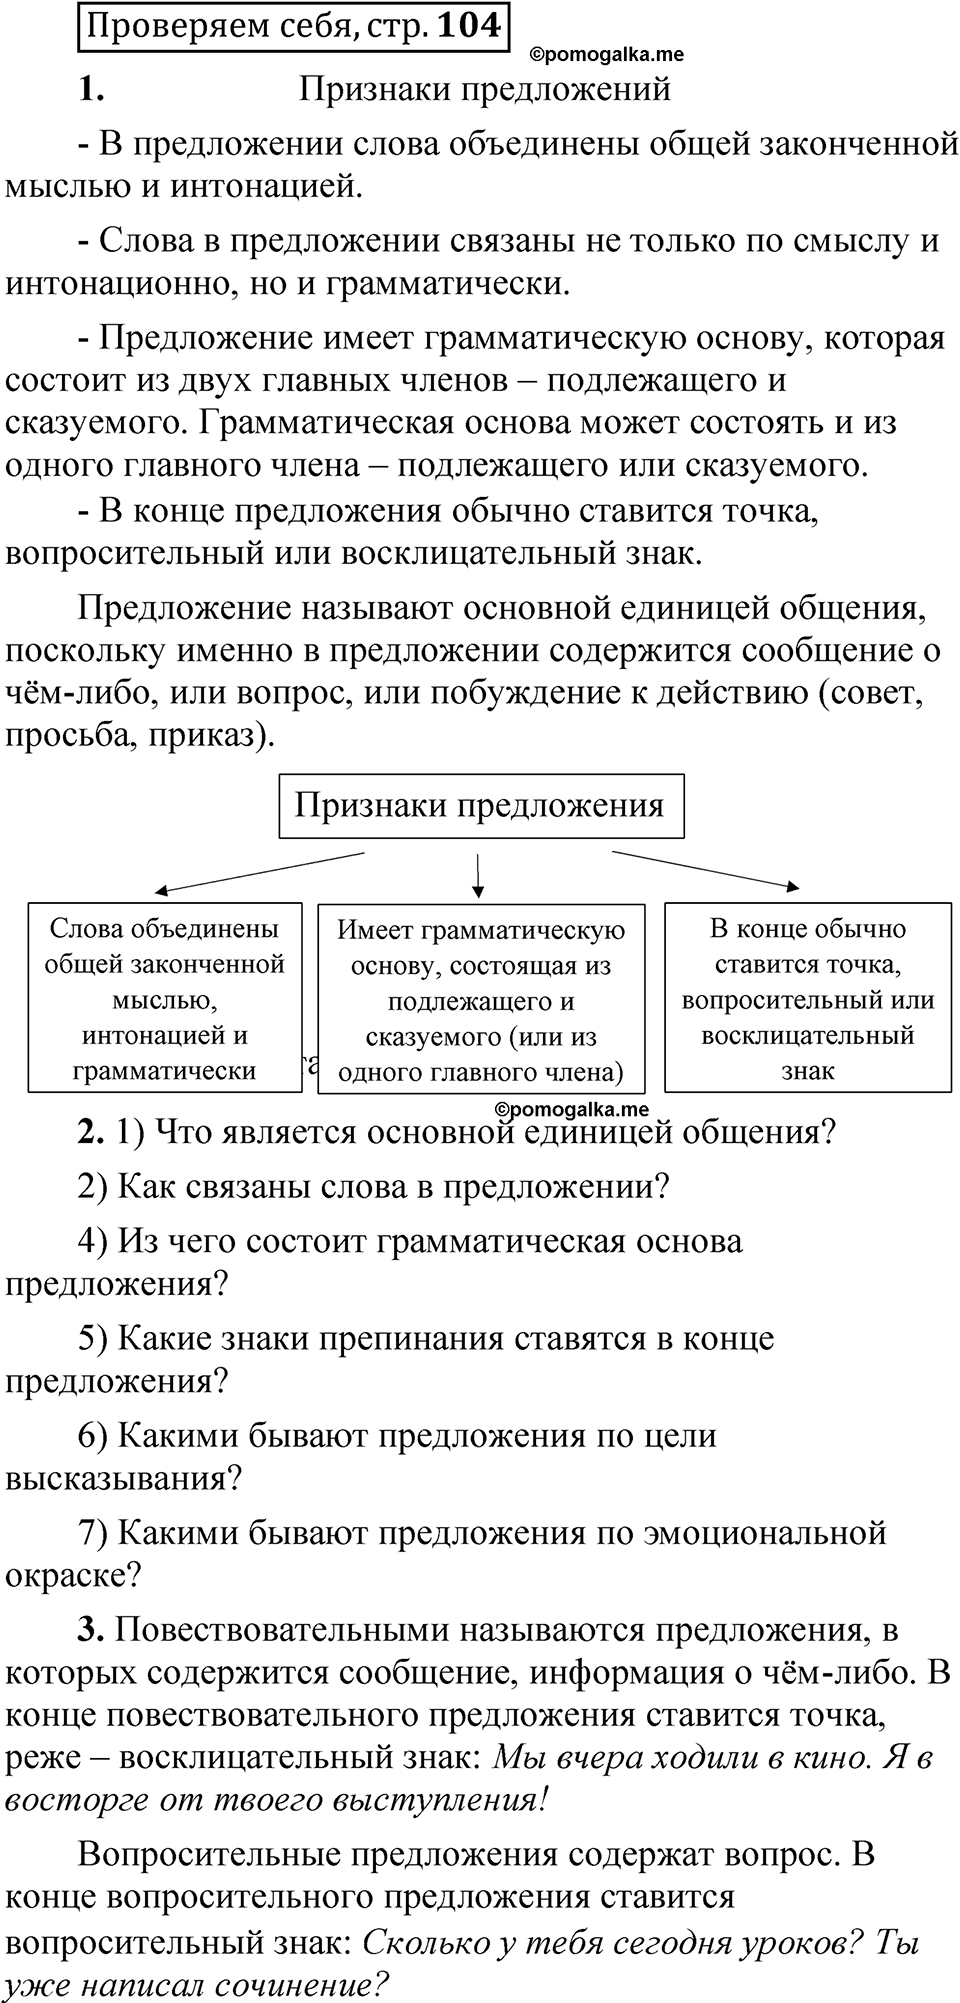 страница 104 Проверяем себя русский язык 5 класс Быстрова, Кибирева 1 часть 2021 год